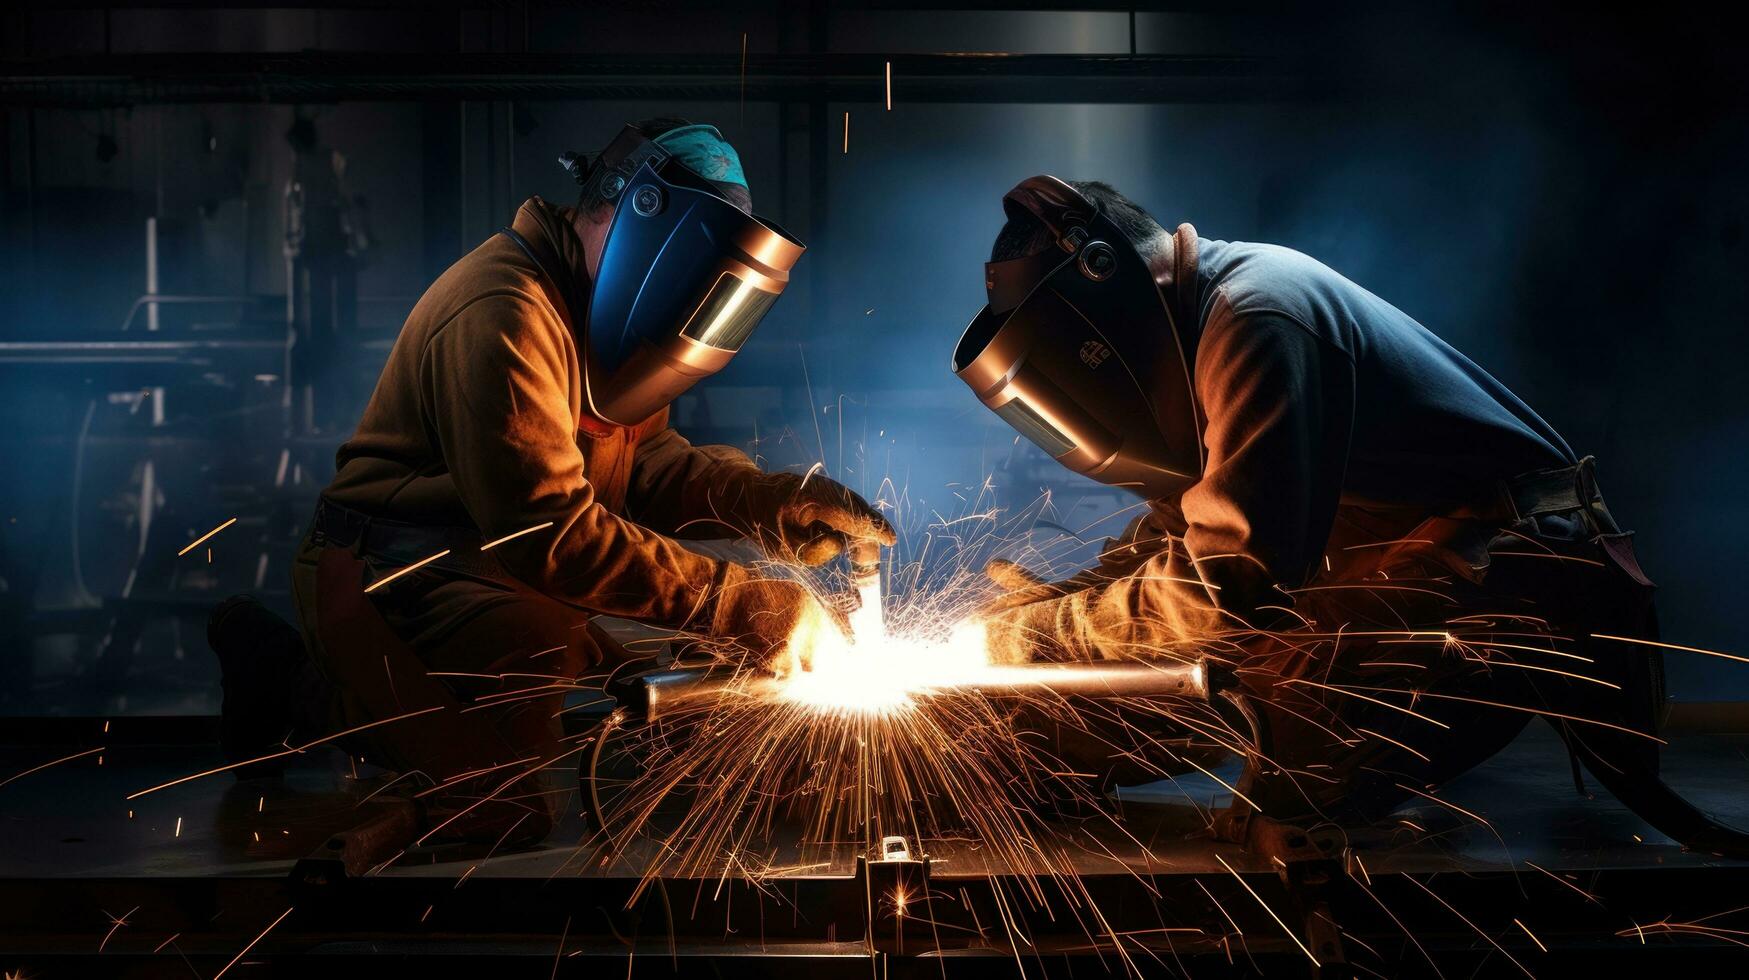 trabajadores son soldadura metal a un industrial fábrica foto